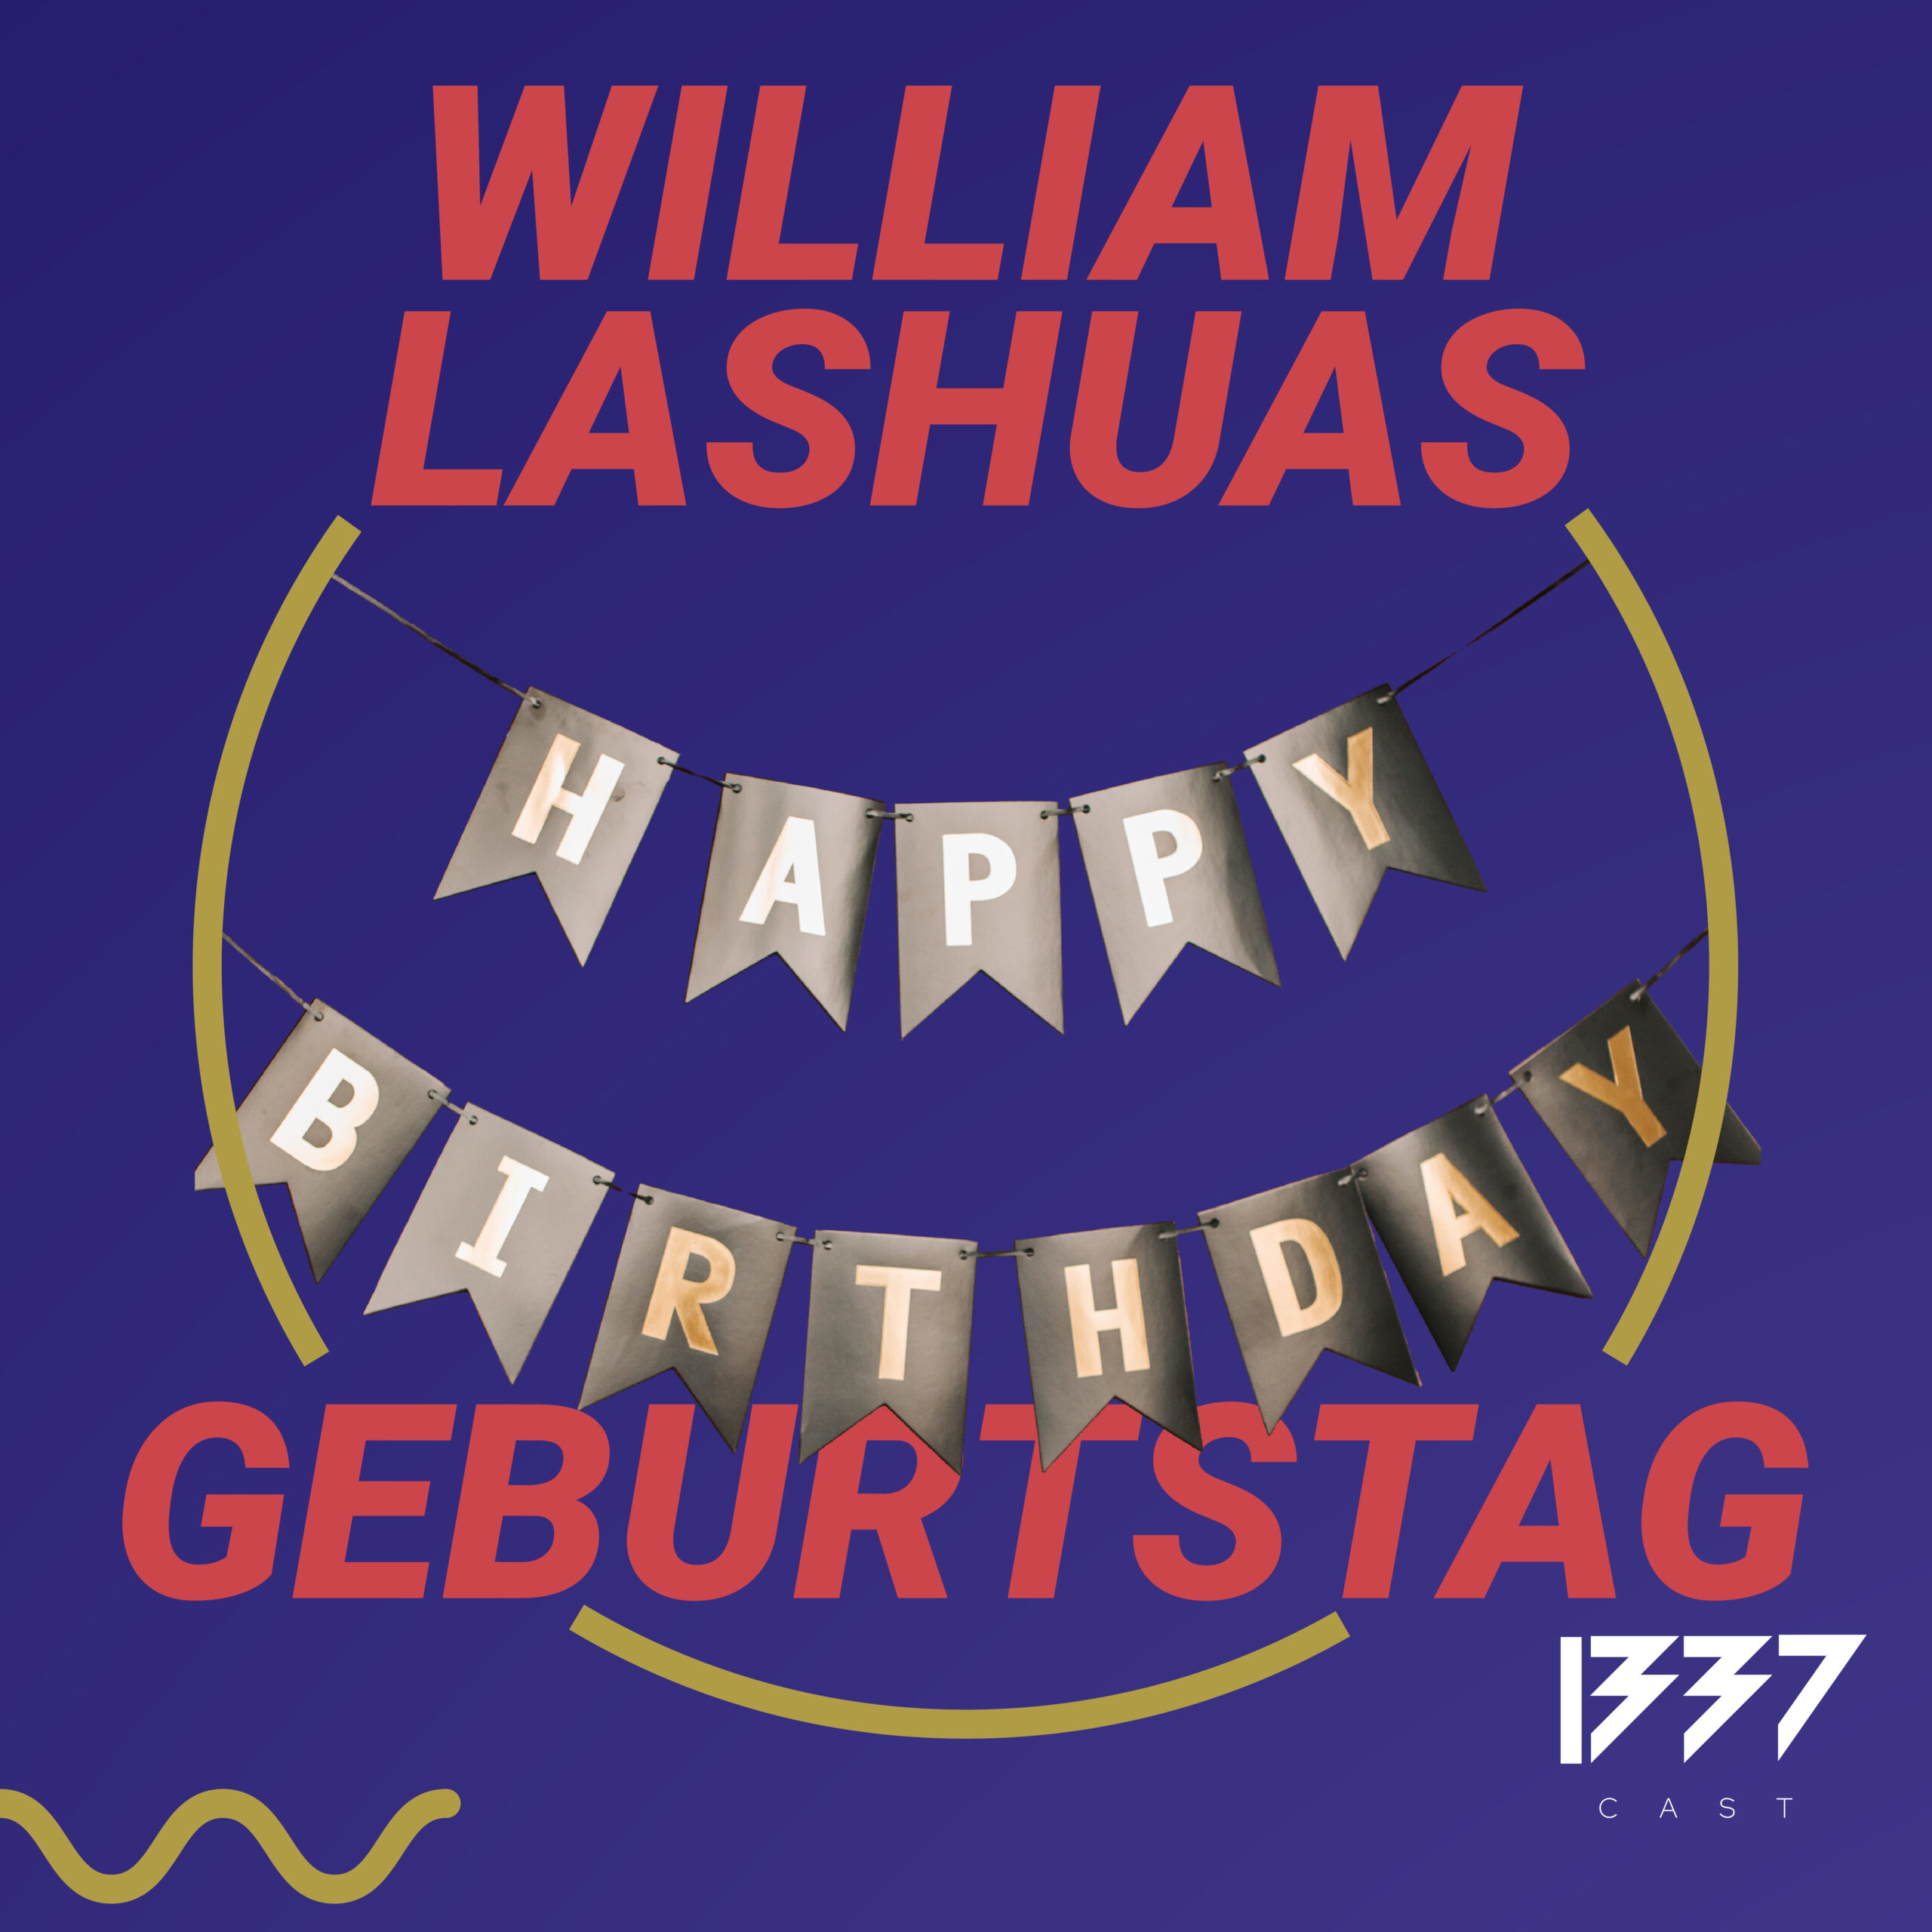 Das Intertet-Geburtstagswunder – William Lashuas Geburtstag